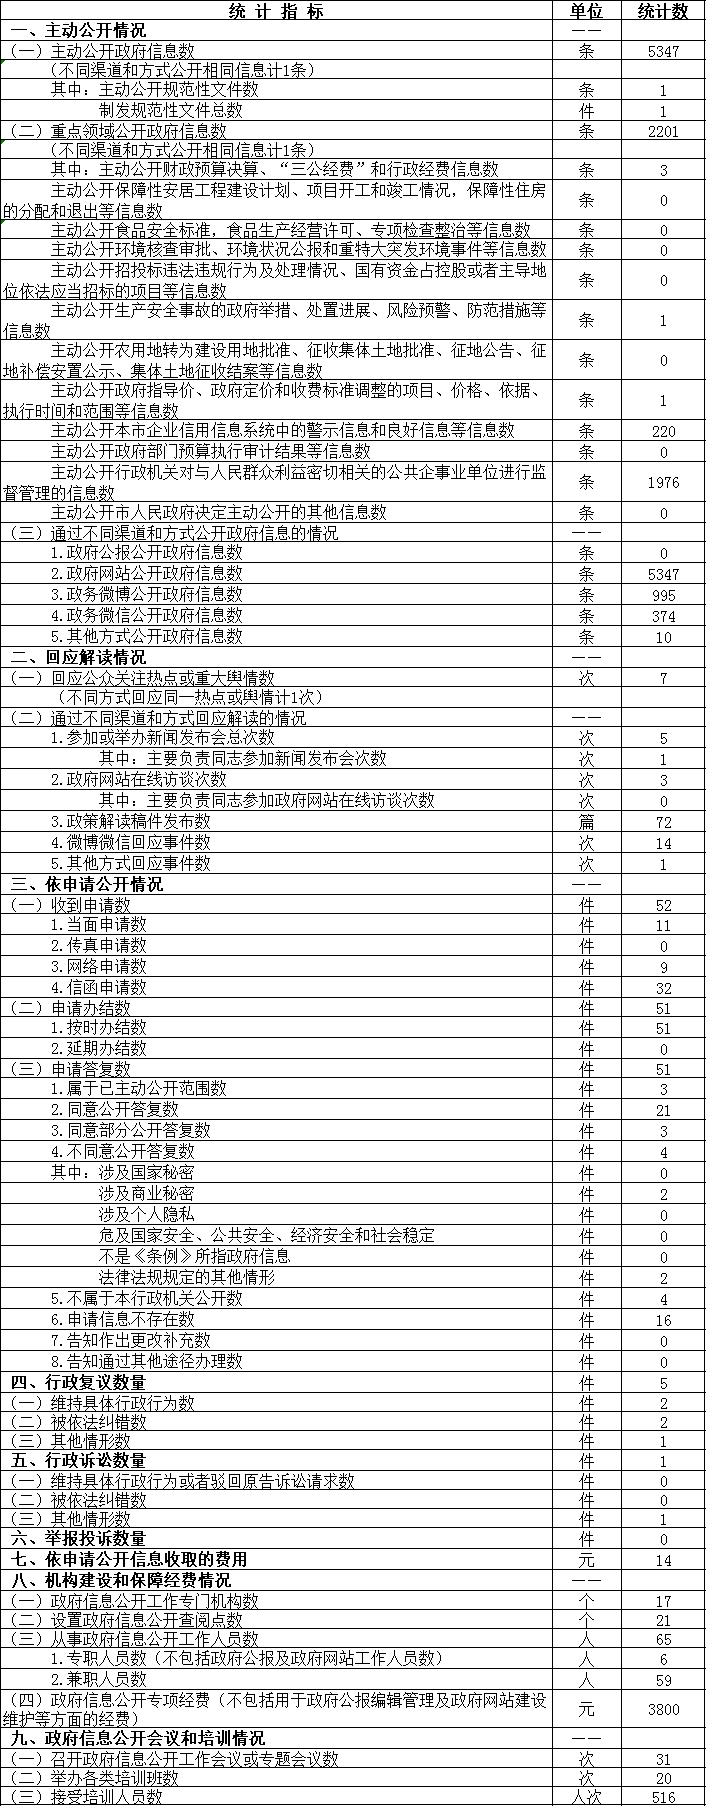 北京市质量技术监督局政府信息公开情况统计表